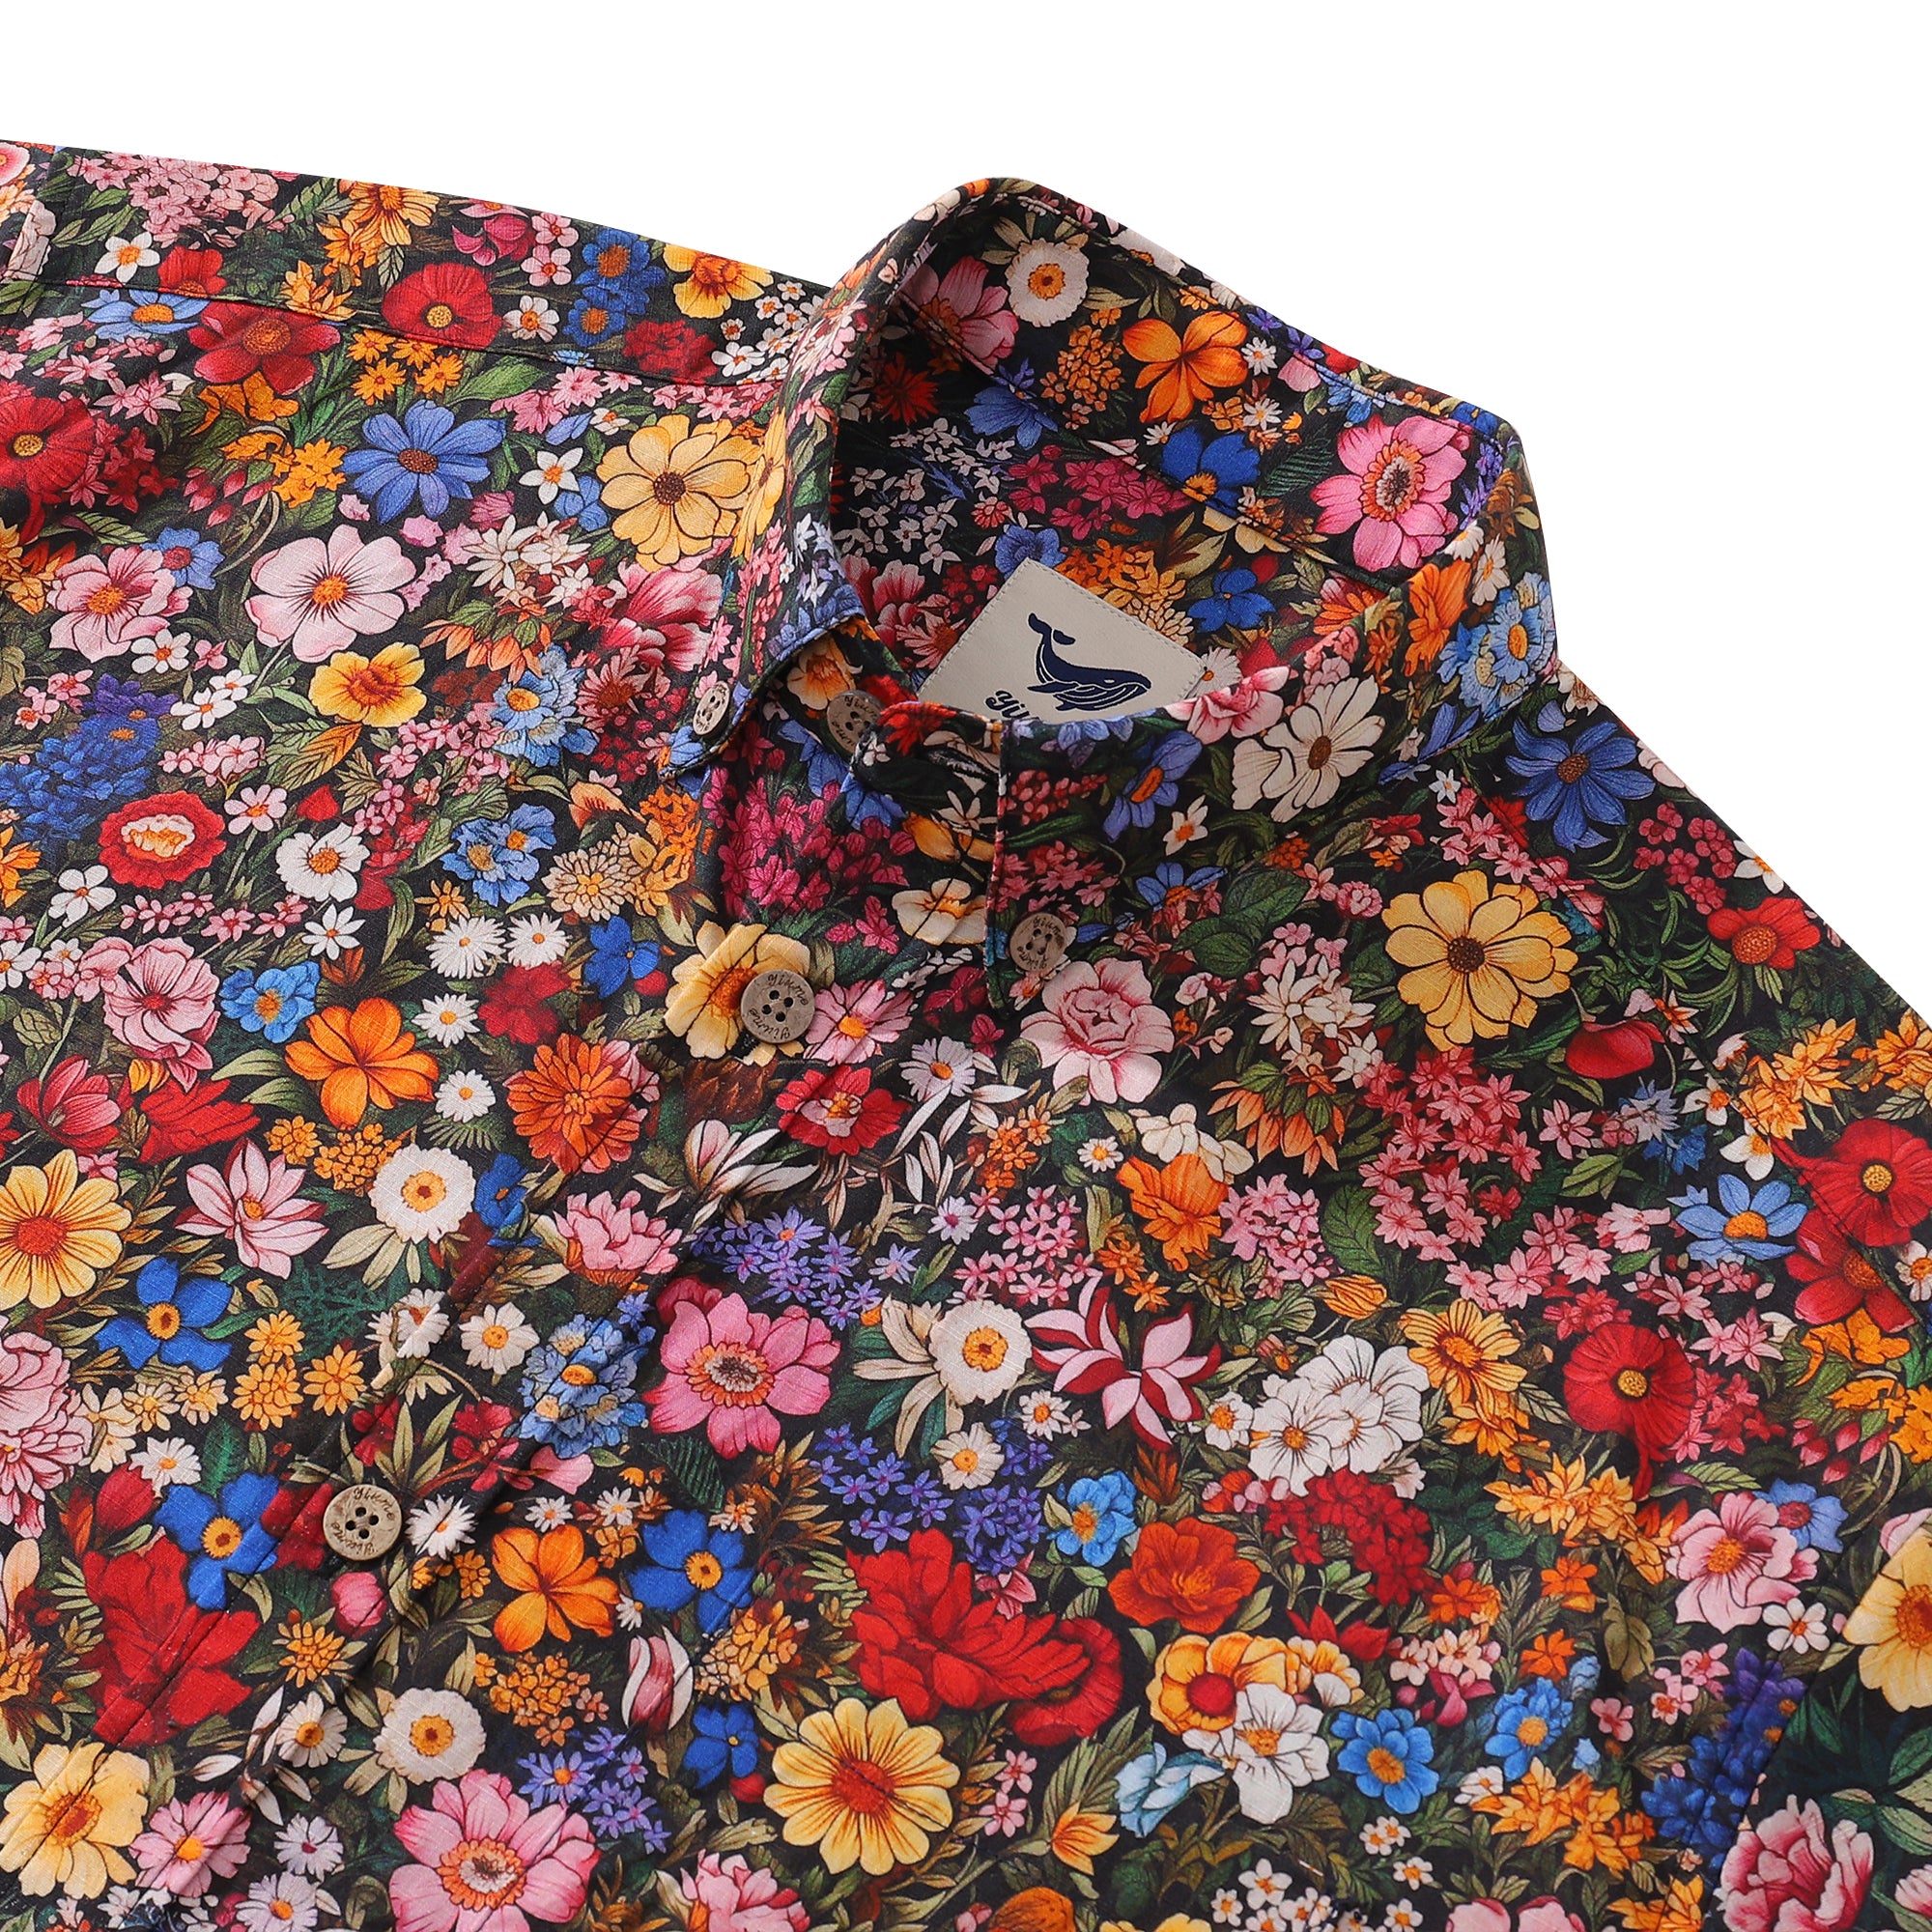 Camisa hawaiana vintage de los años 60 entre las flores, camisa Aloha de manga corta con botones de algodón